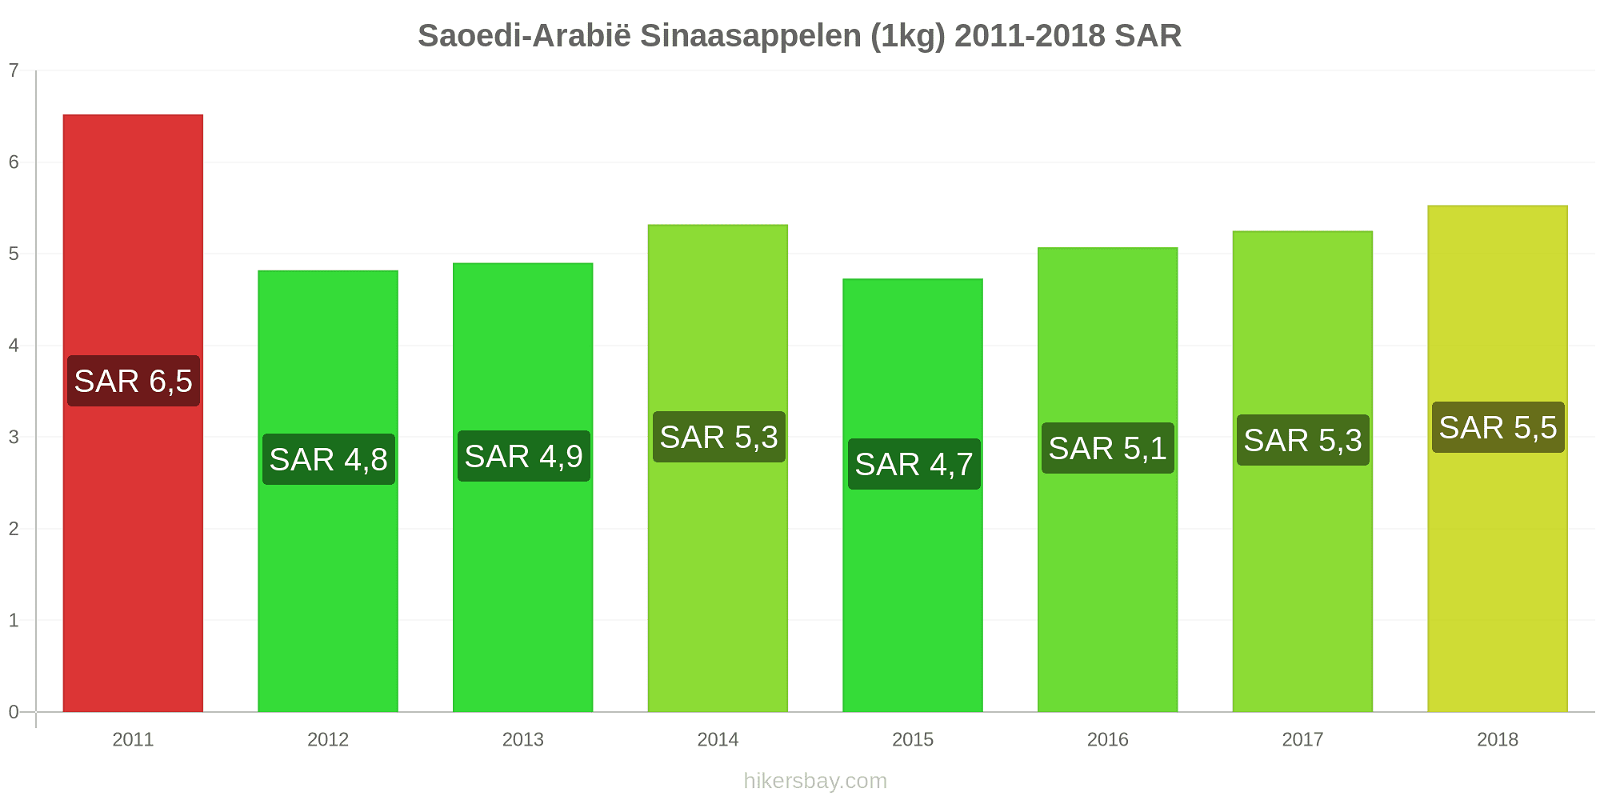 Saoedi-Arabië prijswijzigingen Sinaasappels (1kg) hikersbay.com